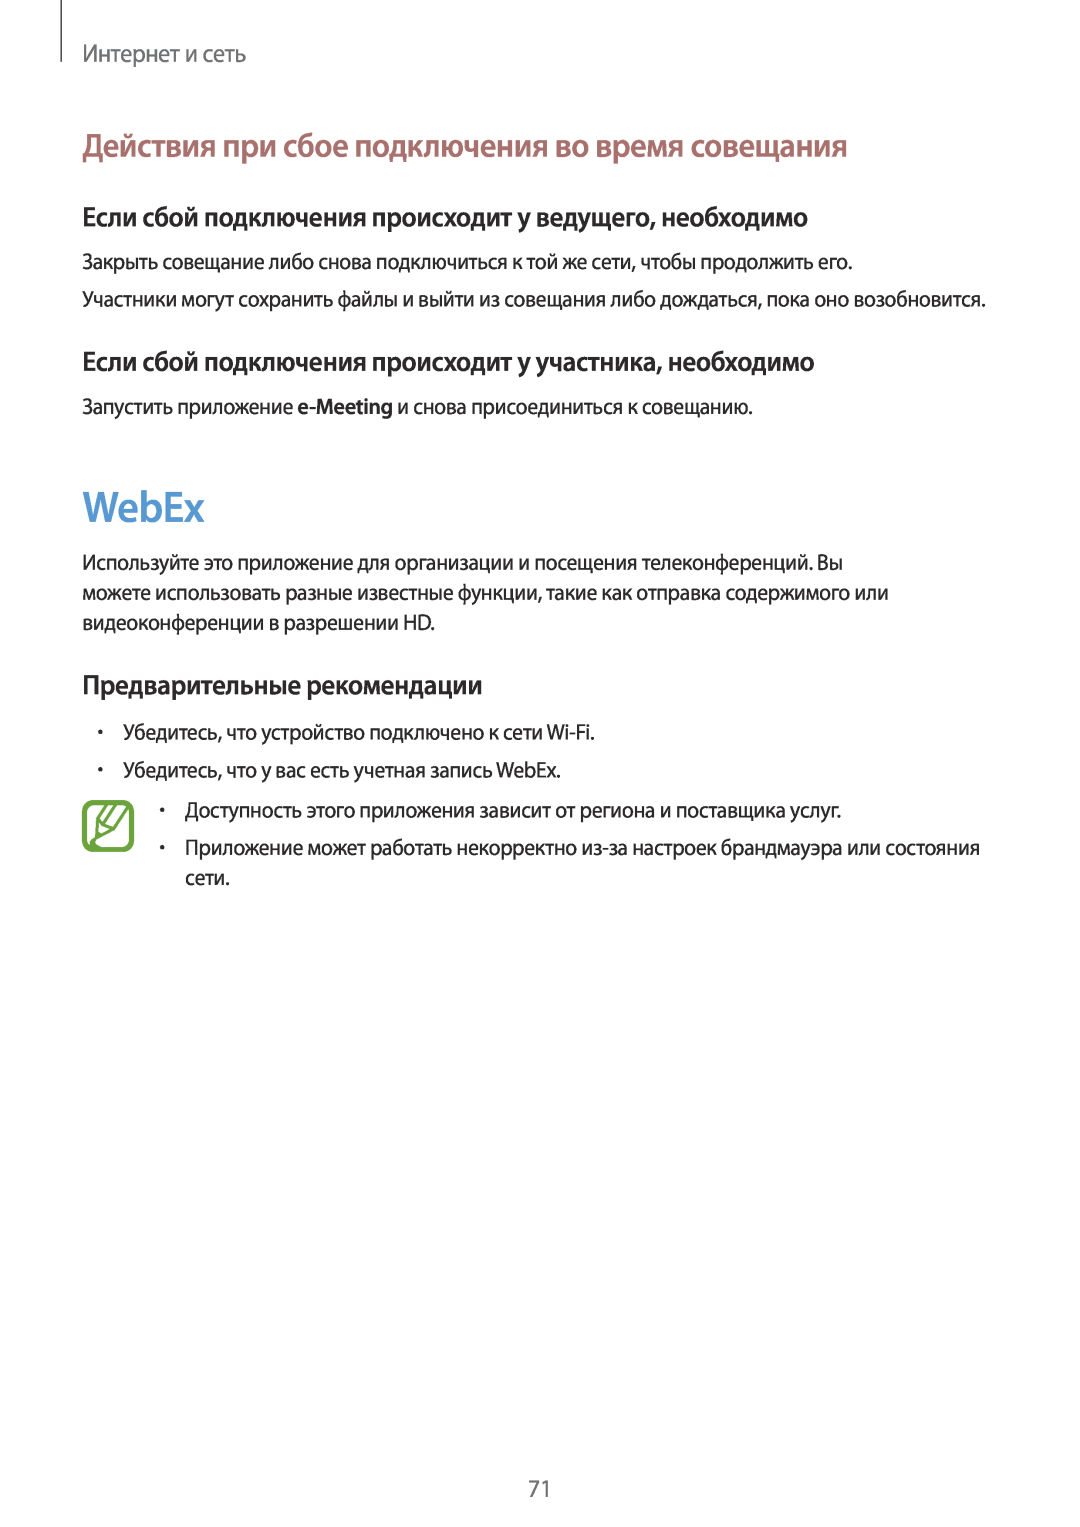 Samsung SM-P9000ZKASER manual WebEx, Действия при сбое подключения во время совещания, Предварительные рекомендации 